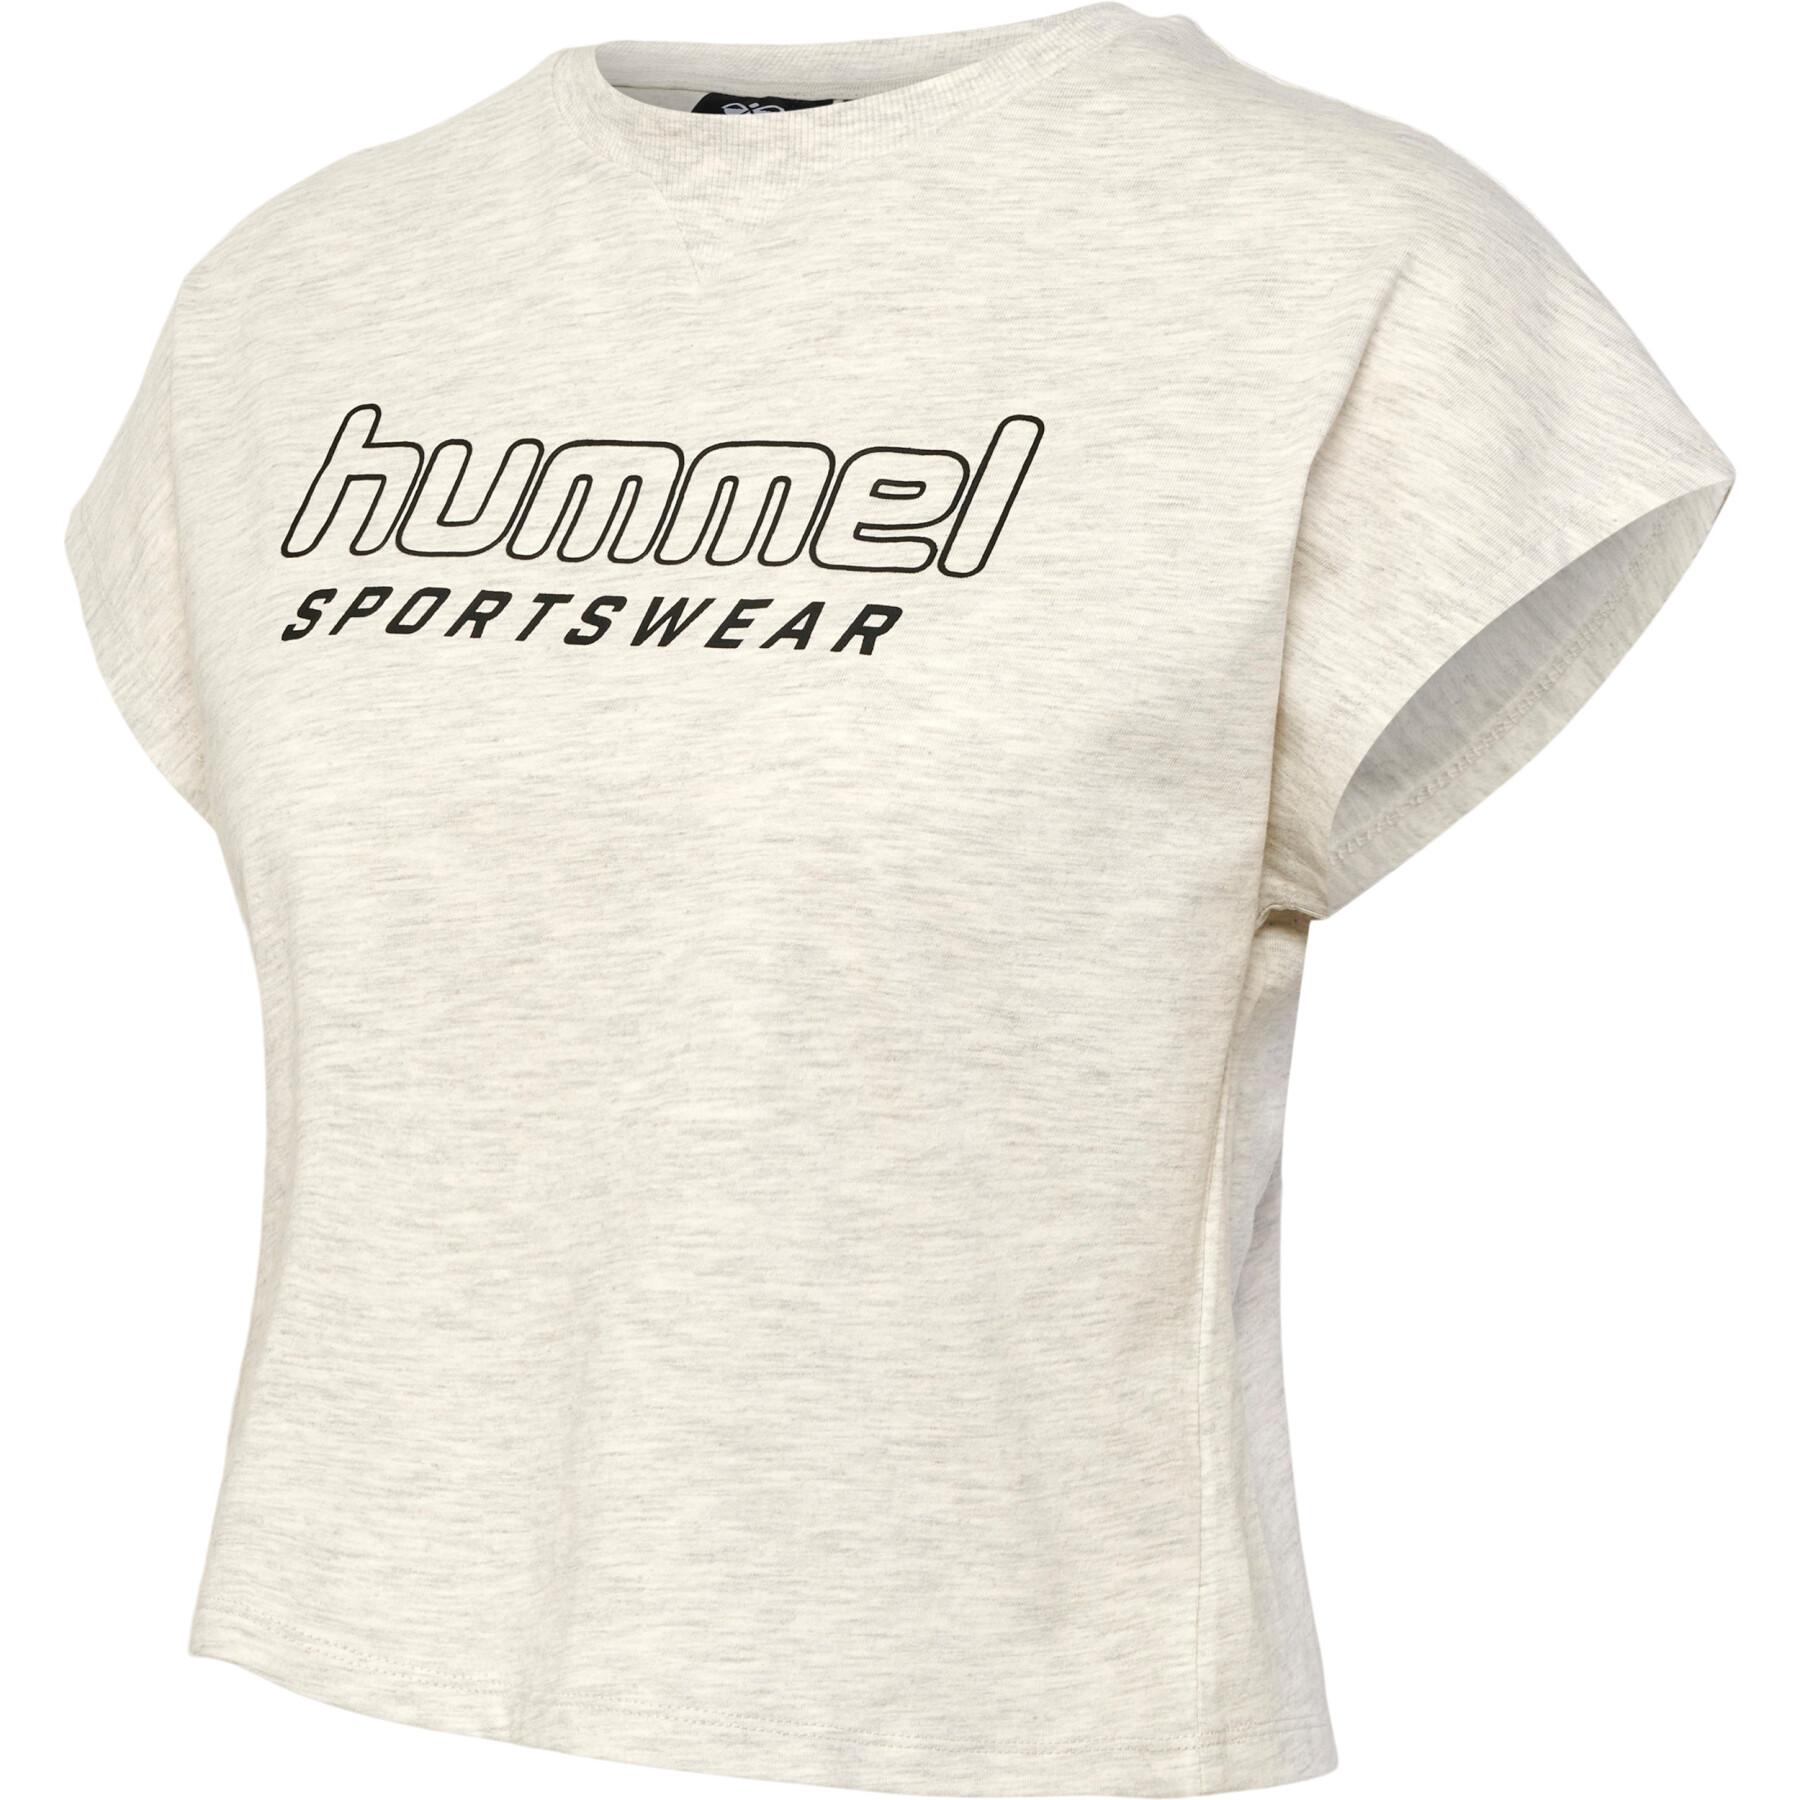 Camiseta de mujer Hummel Lgc June